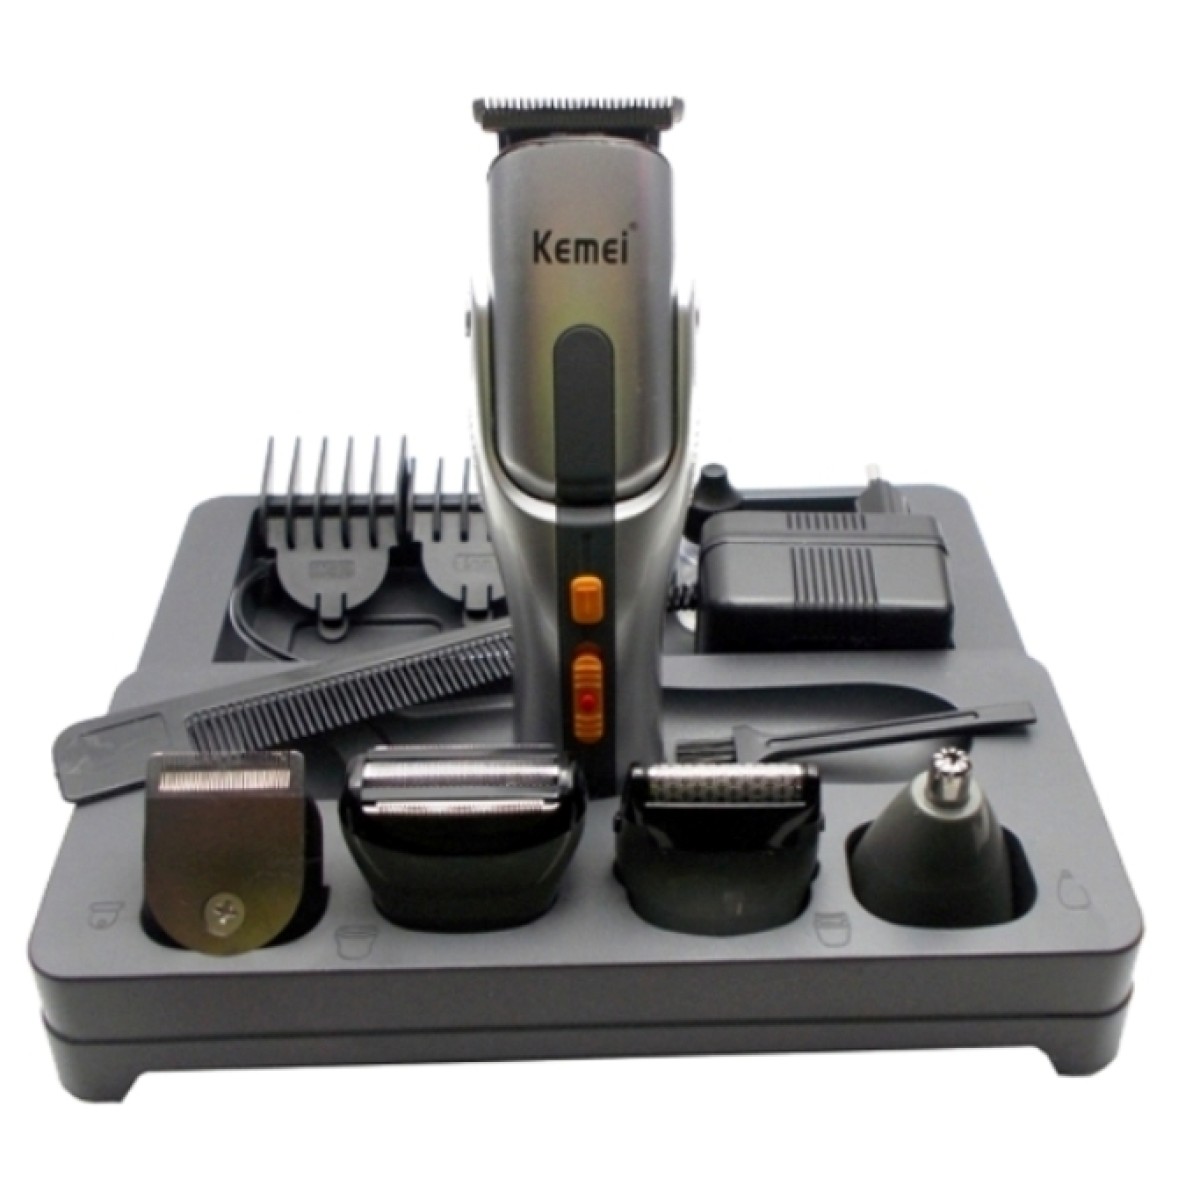 Σετ κουρευτικής και ξυριστικής μηχανής για μαλλιά και γένια 8 σε 1 Kemei KM-680A